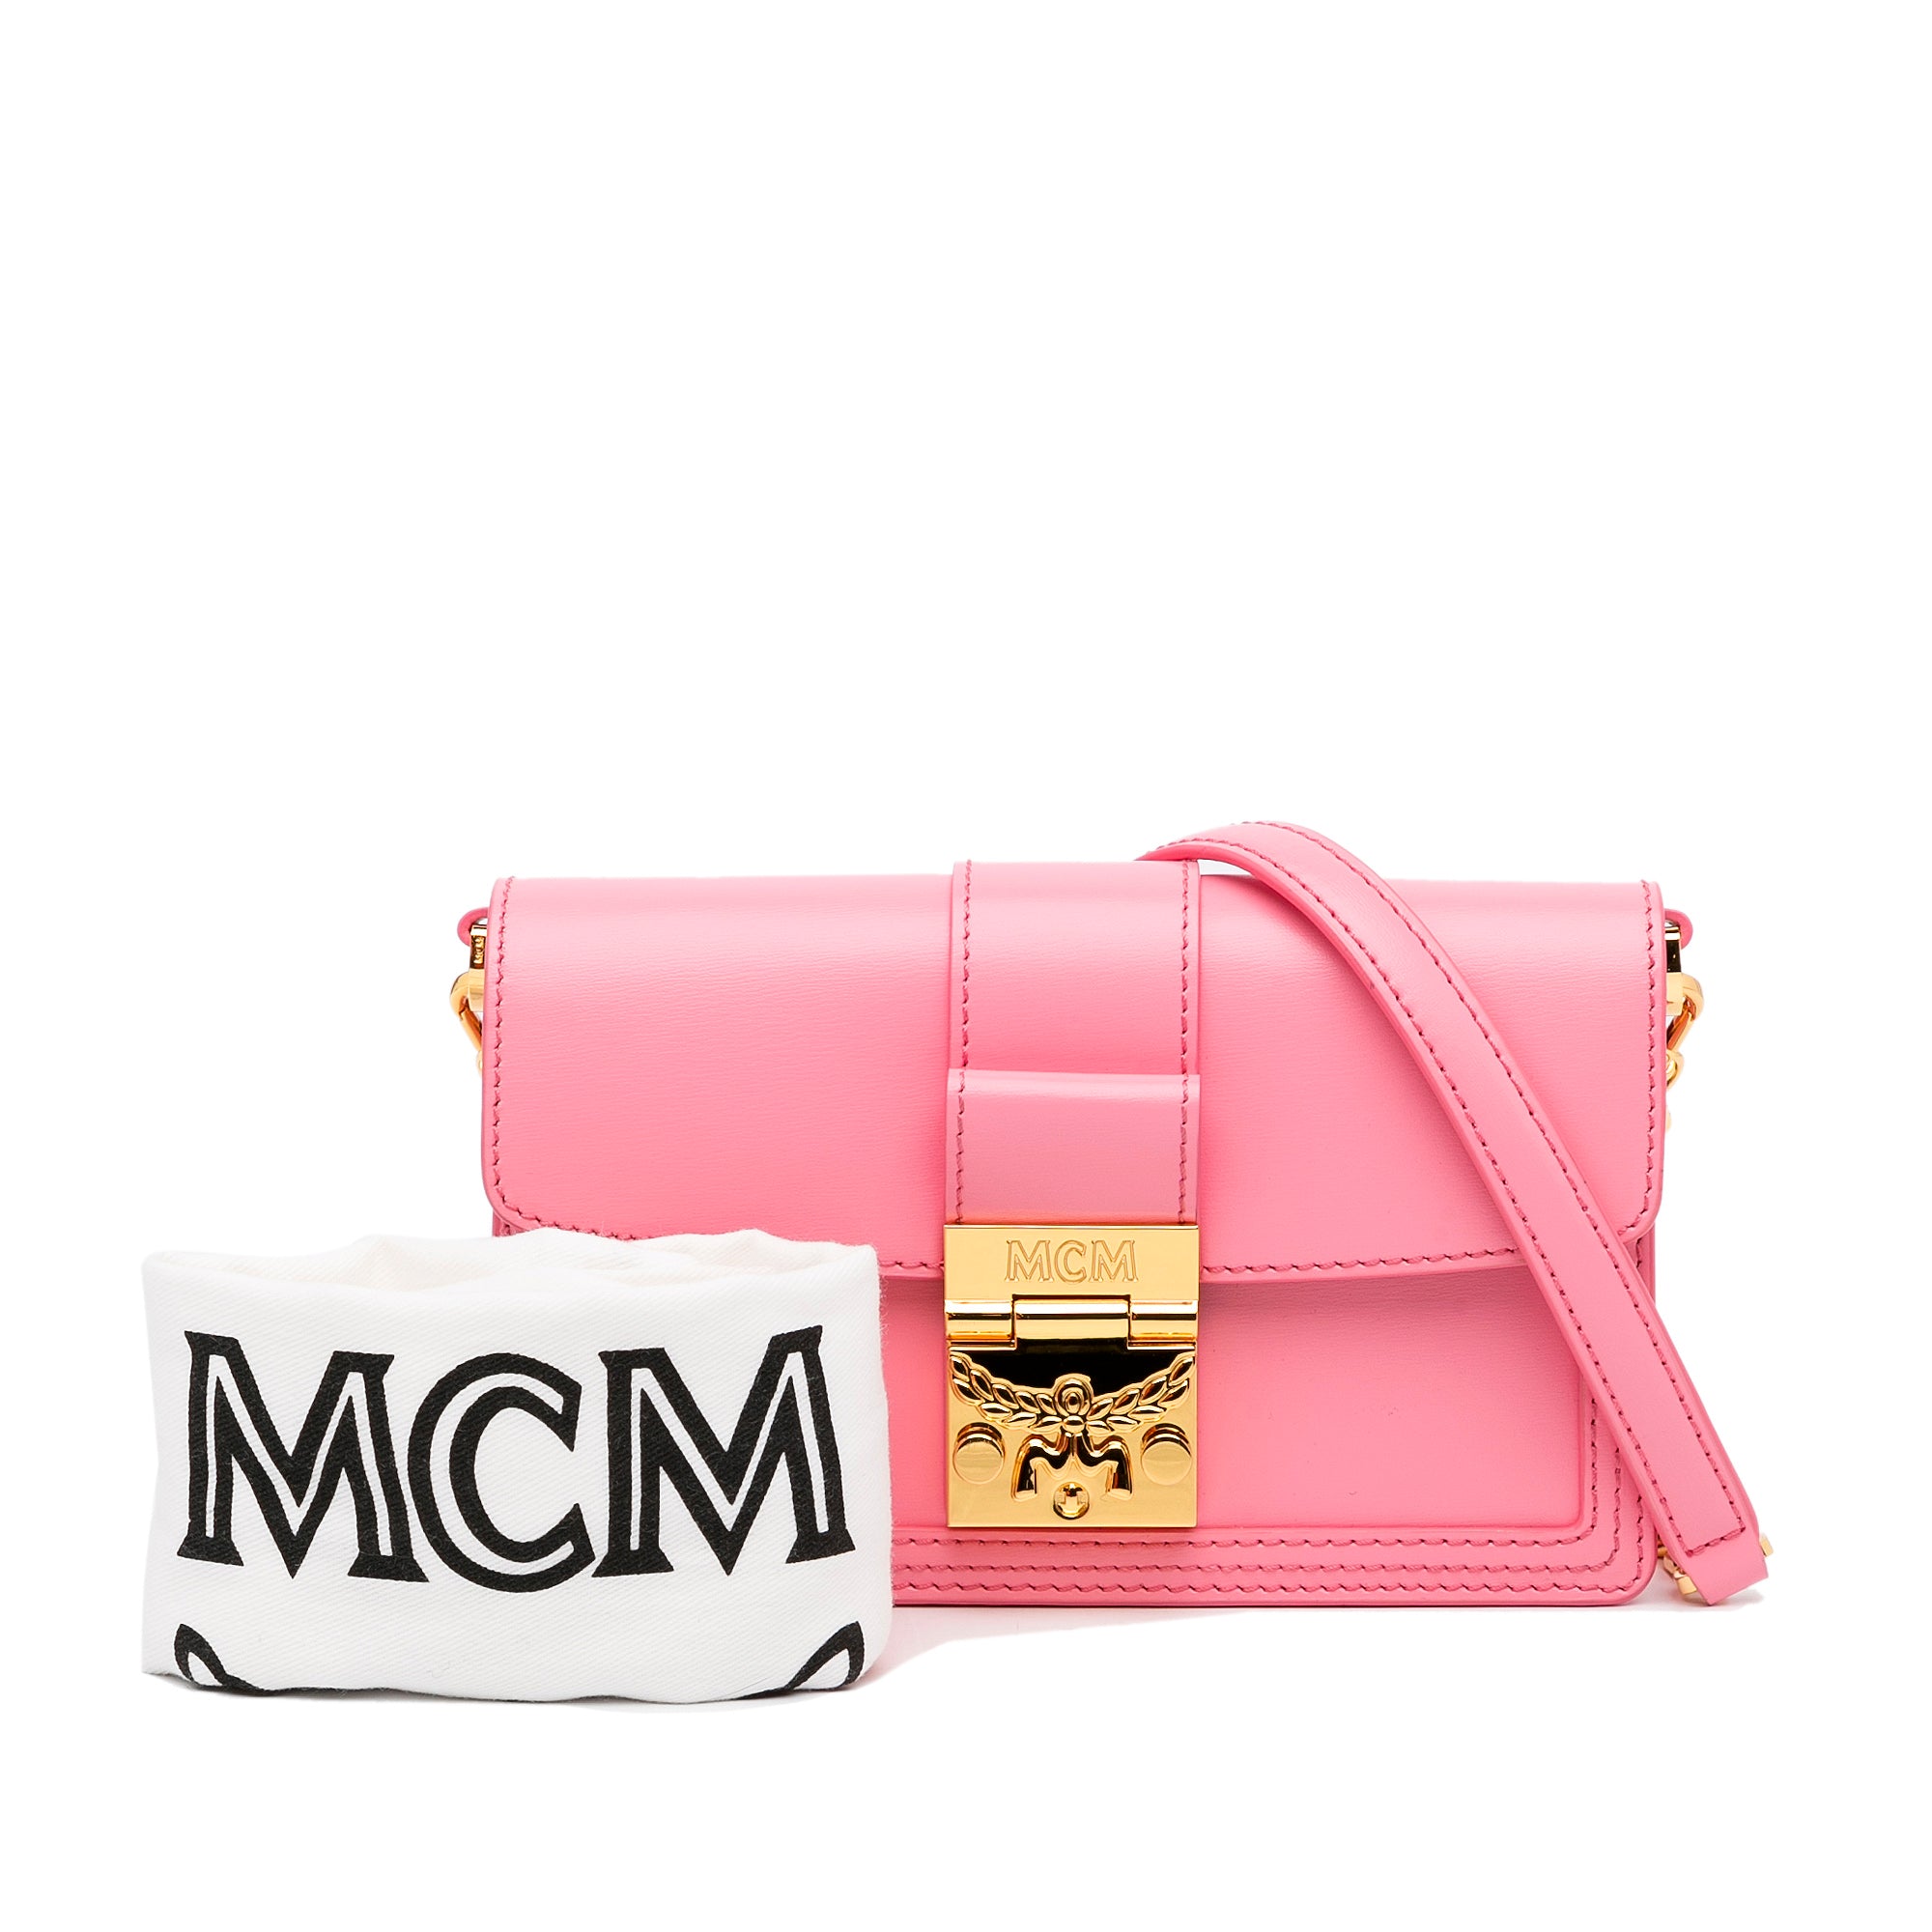 Mcm shopping bag/ shoulder bag / crossbody bag.